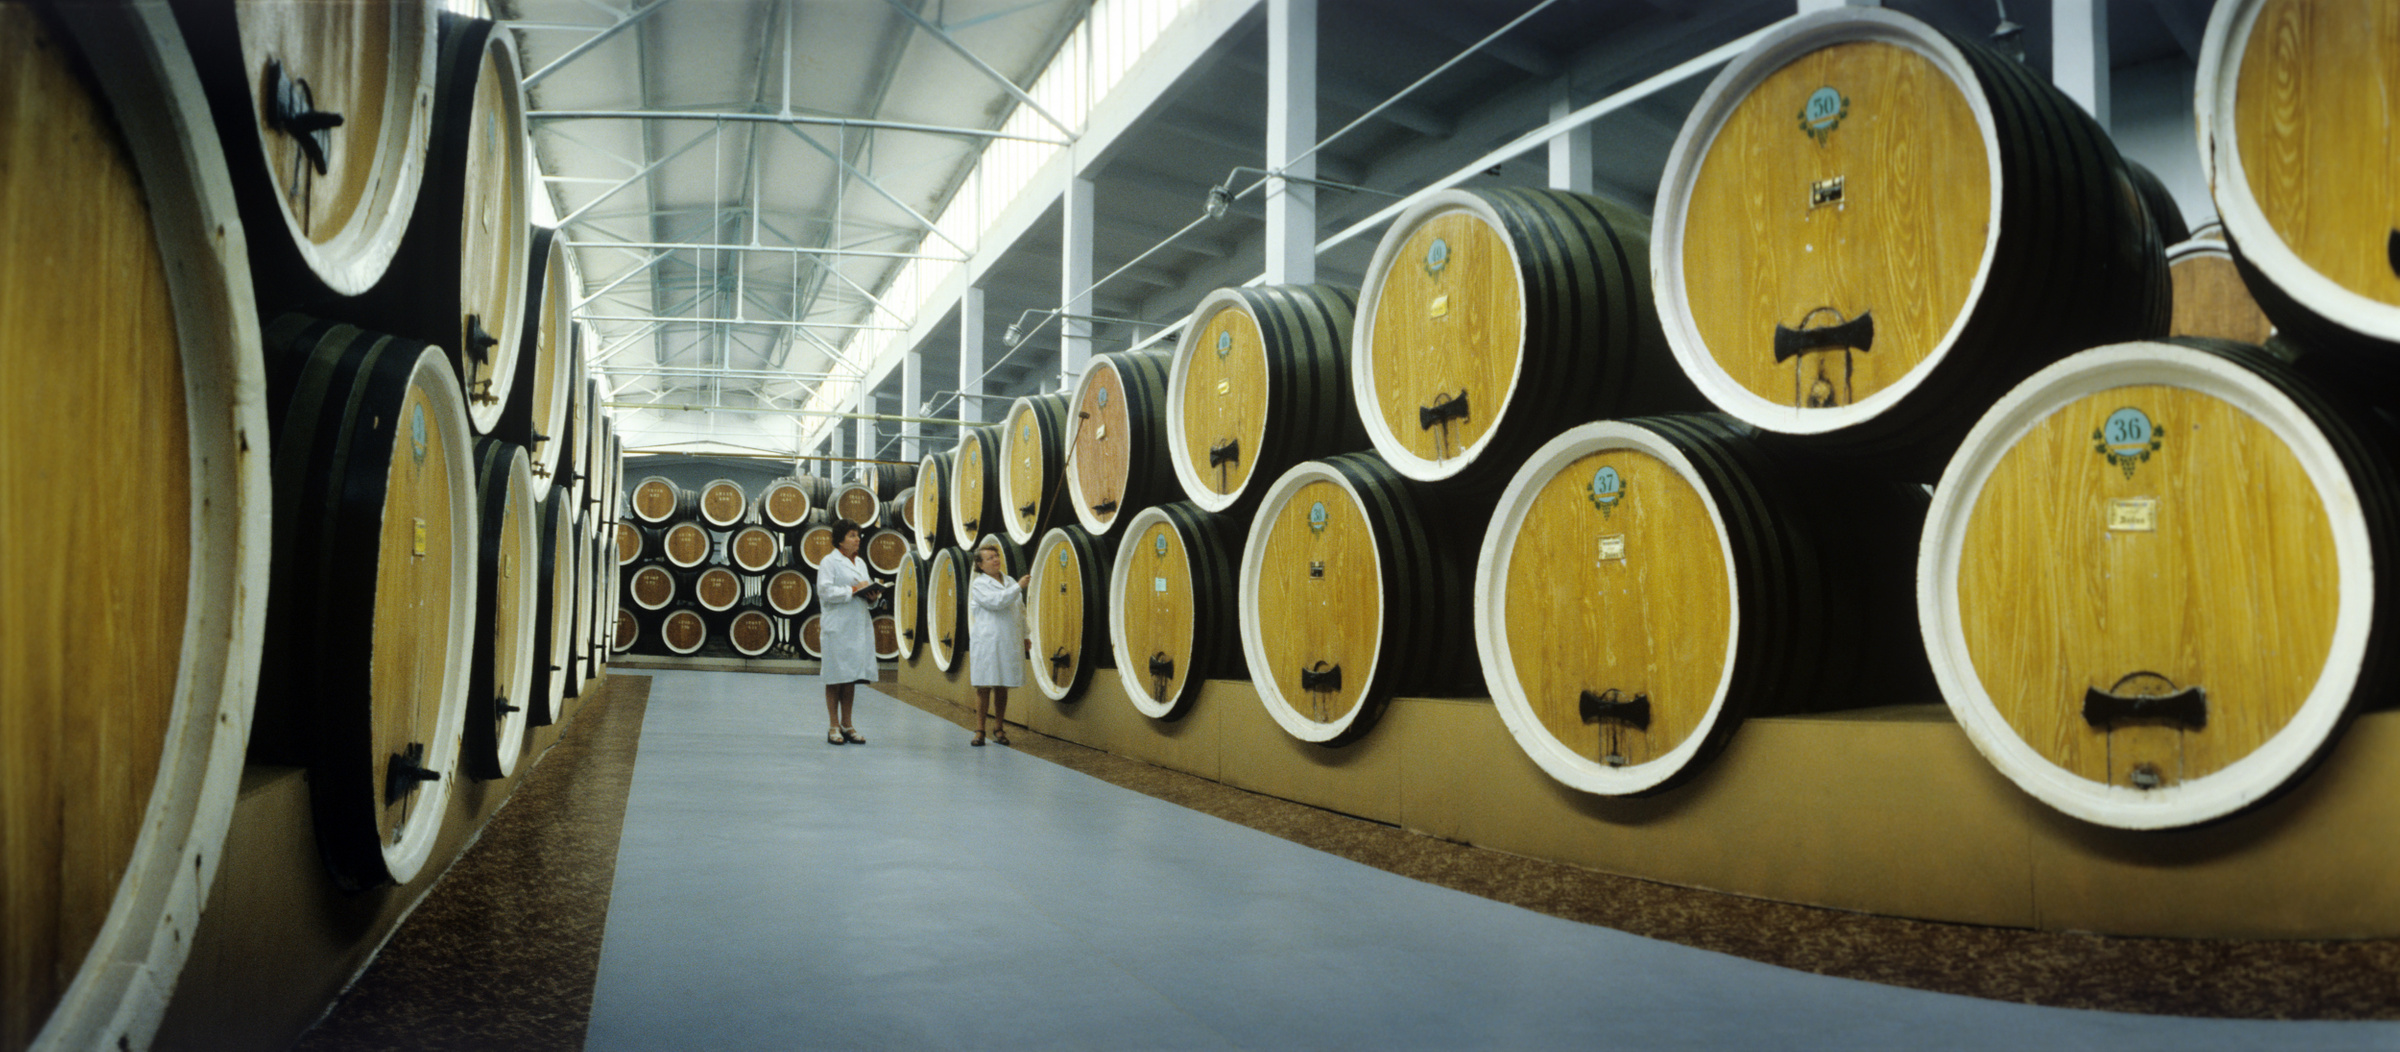 Тираспольский винно-коньячный завод, 1980 год. Фото © ТАСС / Юрий Лизунов, Альберт Симановский